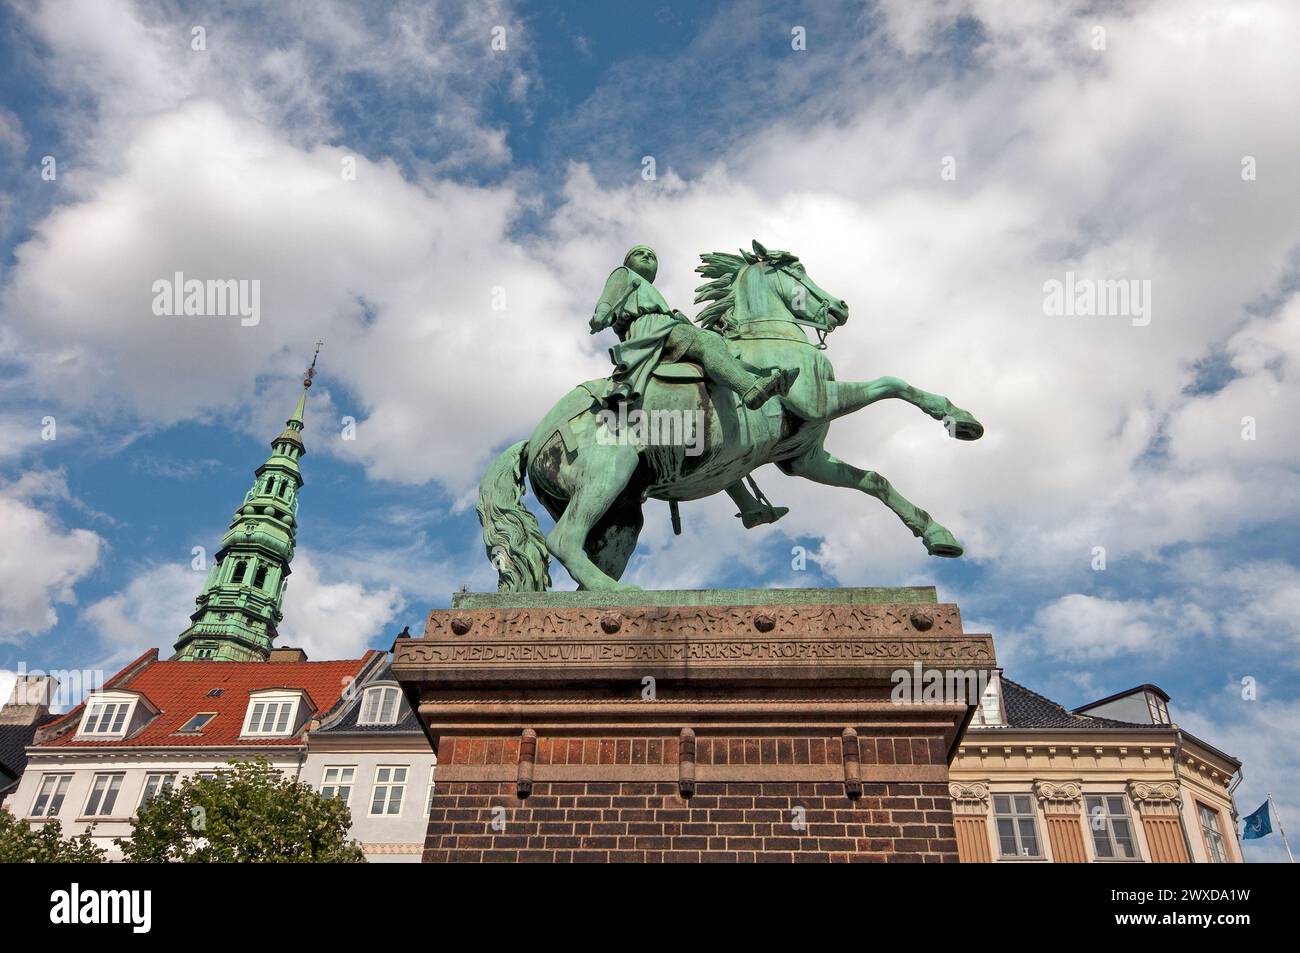 Statue équestre en bronze de l'évêque Absalon à Højbro Plads (par Vilhelm Bissen en 1902) et clocher de l'église St Nikolaj, Copenhague, Danemark Banque D'Images